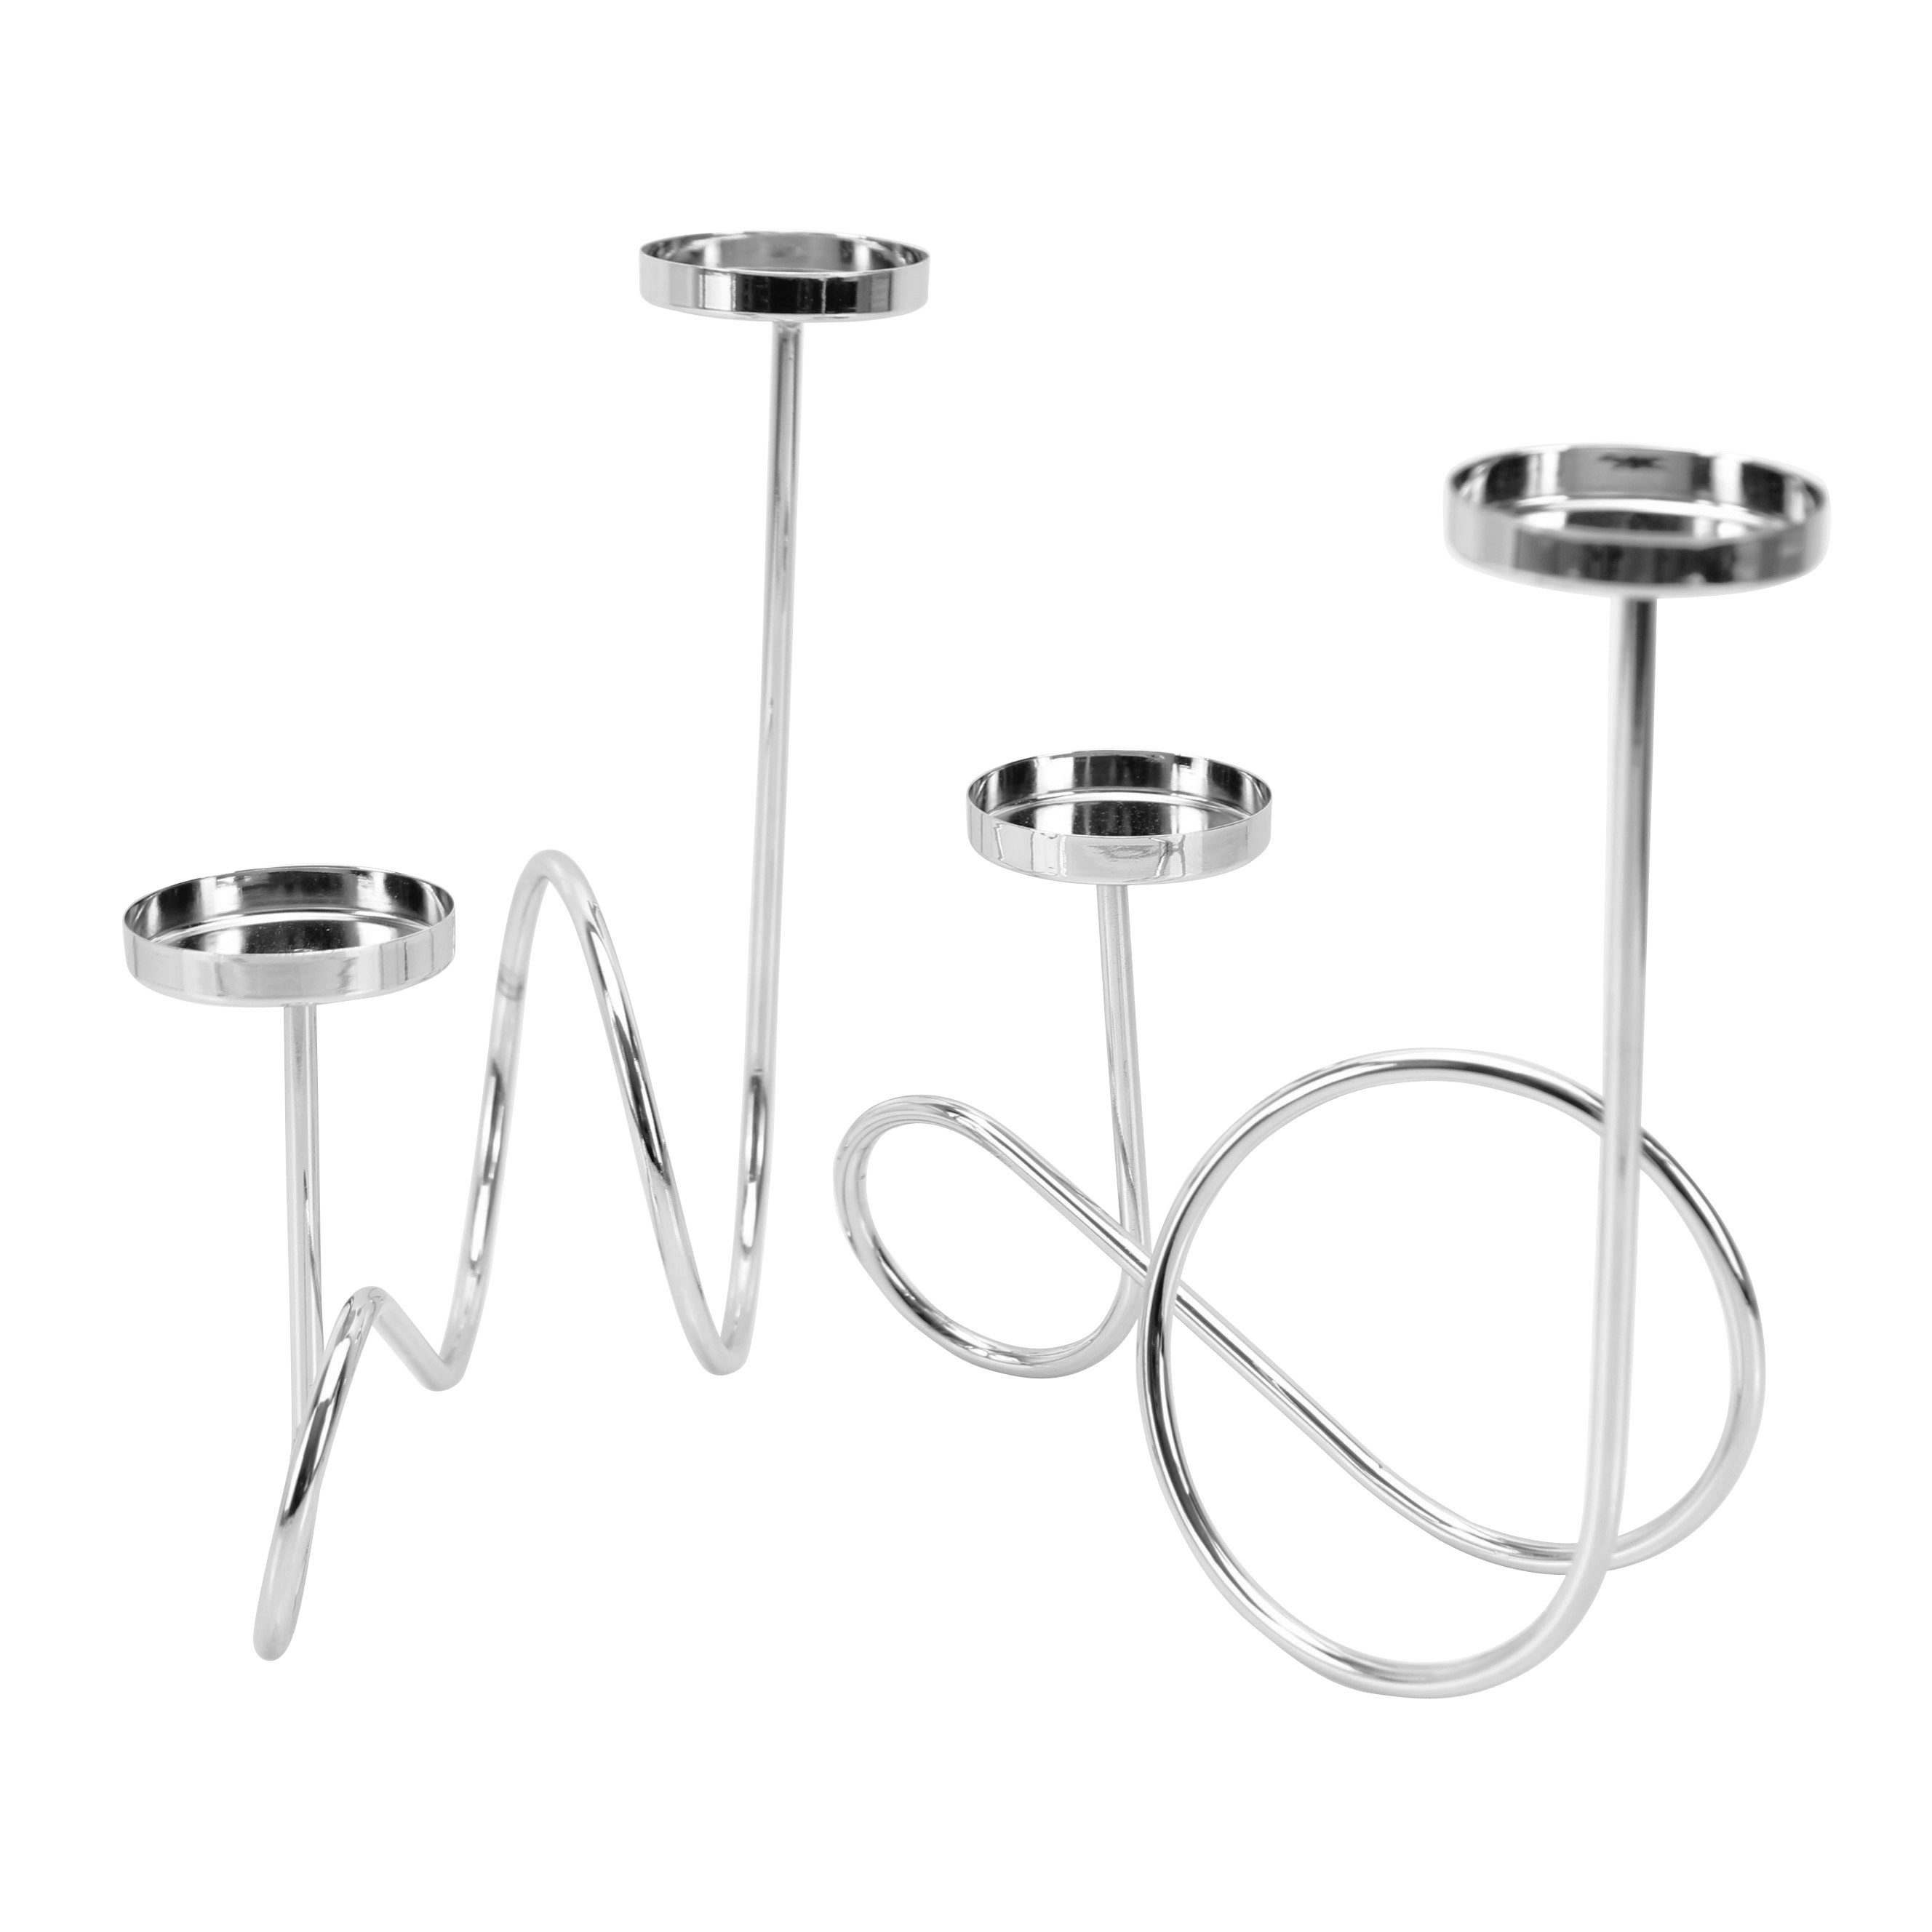 Online-Fuchs Kerzenhalter aus Metall für 4 Teelichter - Modern und elegant geschwungen (Silber), 2 Kerzenhalter für 4 Teelichter, Votivkerzen